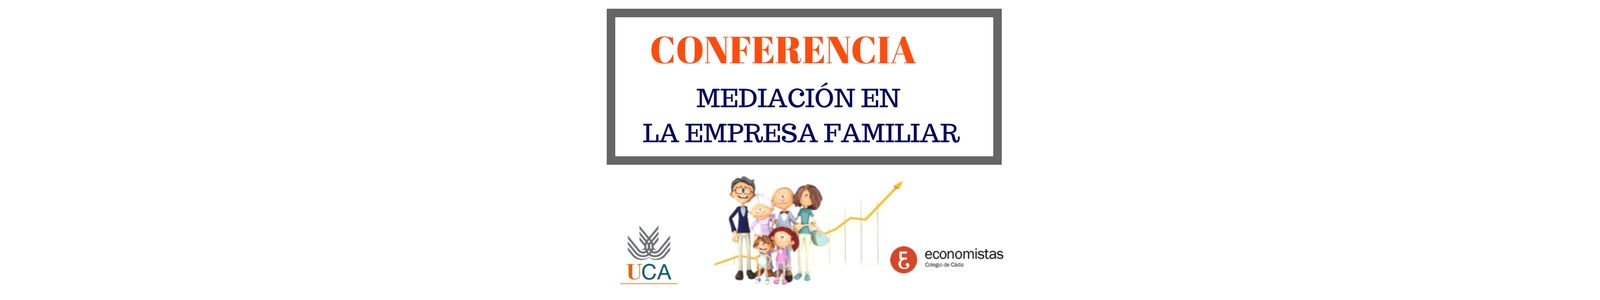 Conferencia "Mediación en la empresa familiar"